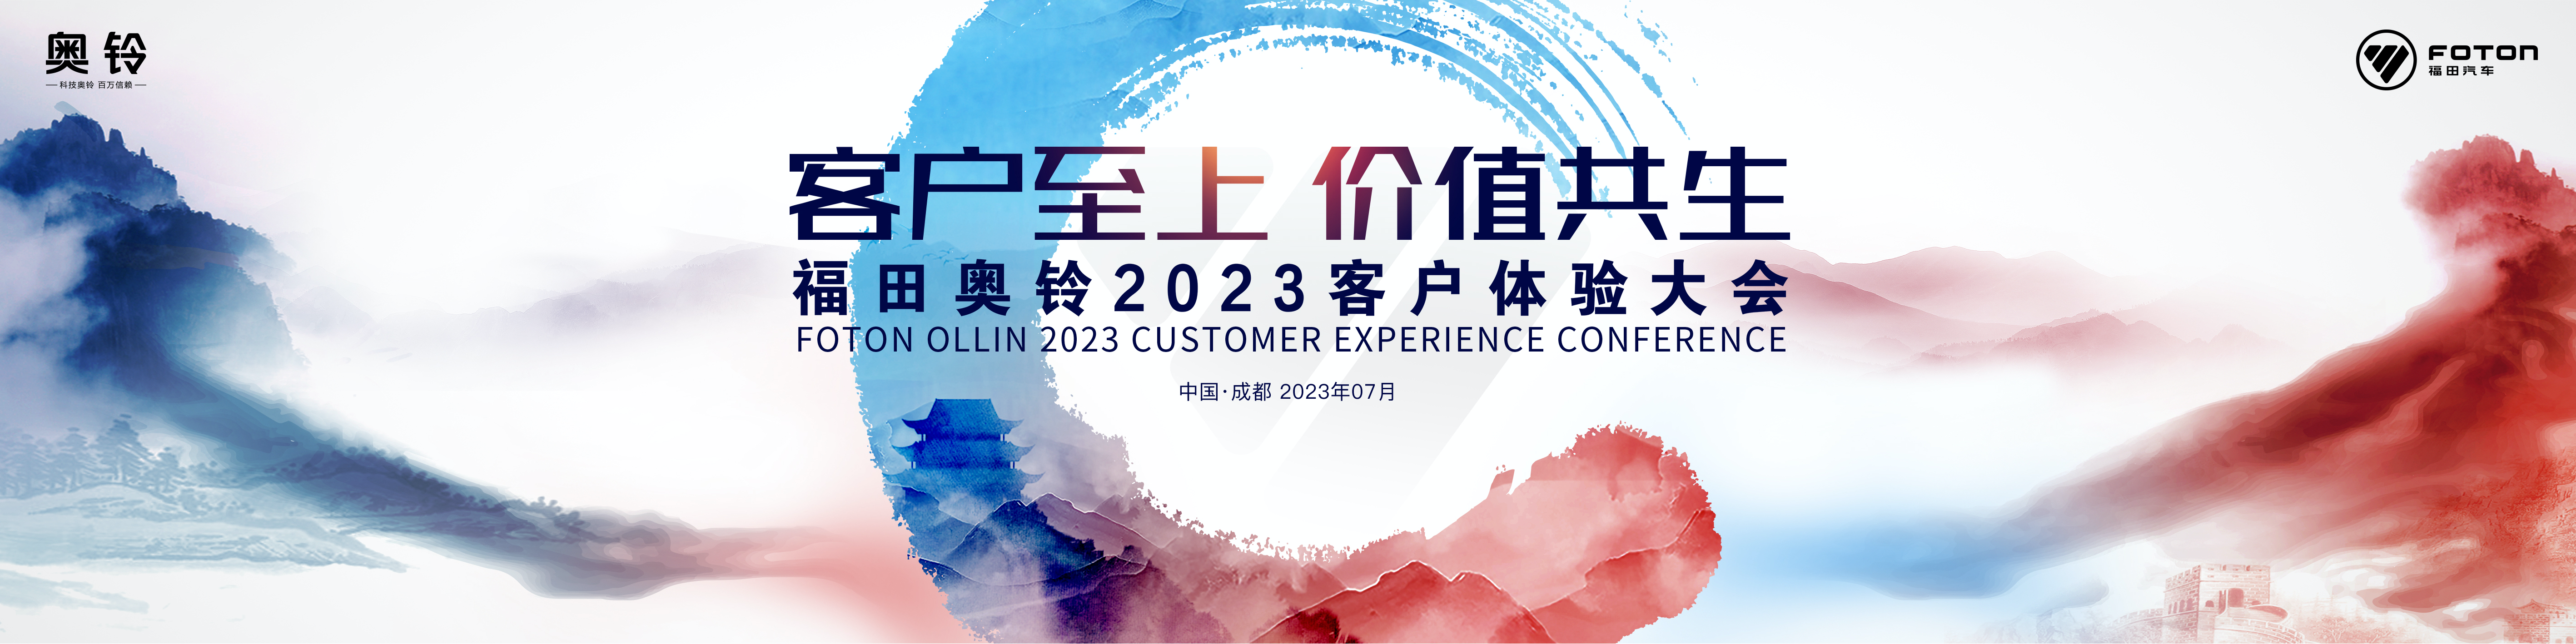 奥铃2023客户体验大会即将开启  轻卡“运动会” 新体验 新价值 传递运动魅力